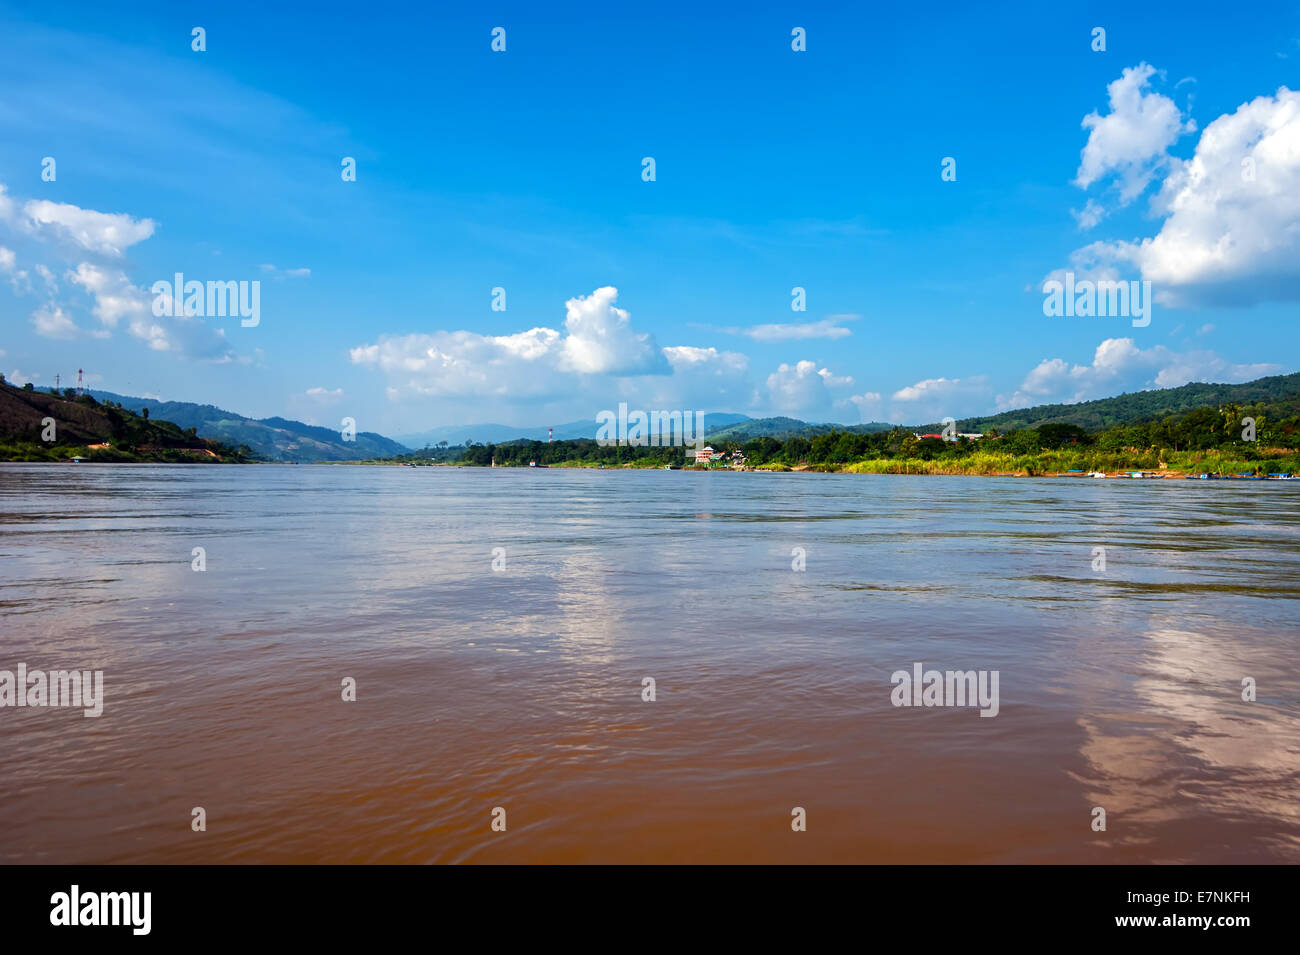 Vue panoramique sur le fleuve du Mékong coulant entre le Laos et la Thaïlande sur le côté droit du côté gauche. Paysage de voyages et destinations Banque D'Images